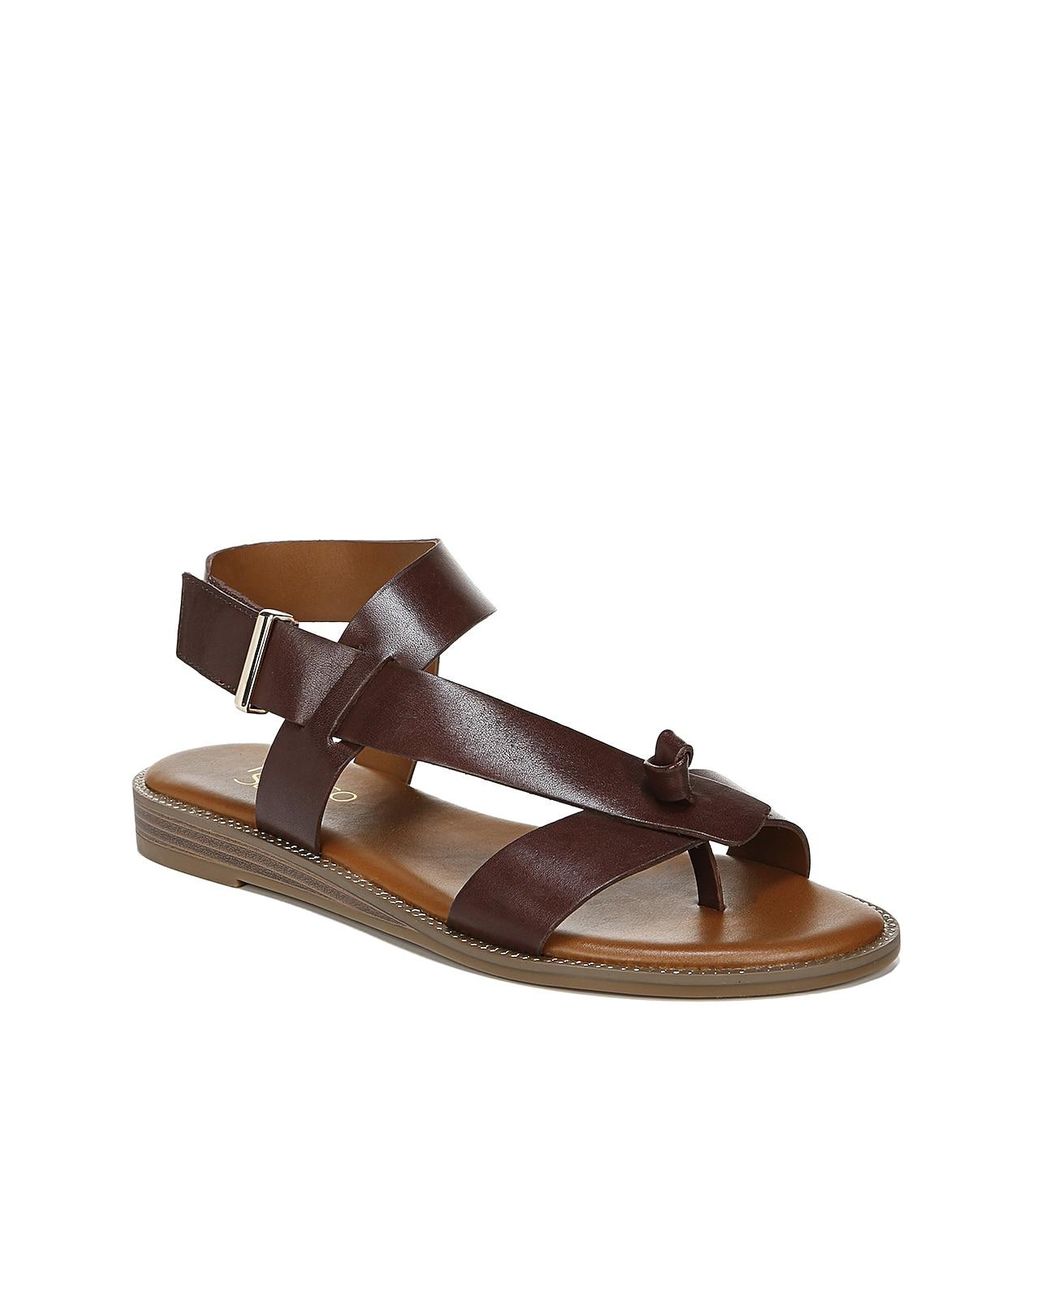 Franco Sarto Leather Glenni Sandal in Dark Brown (Brown) - Lyst